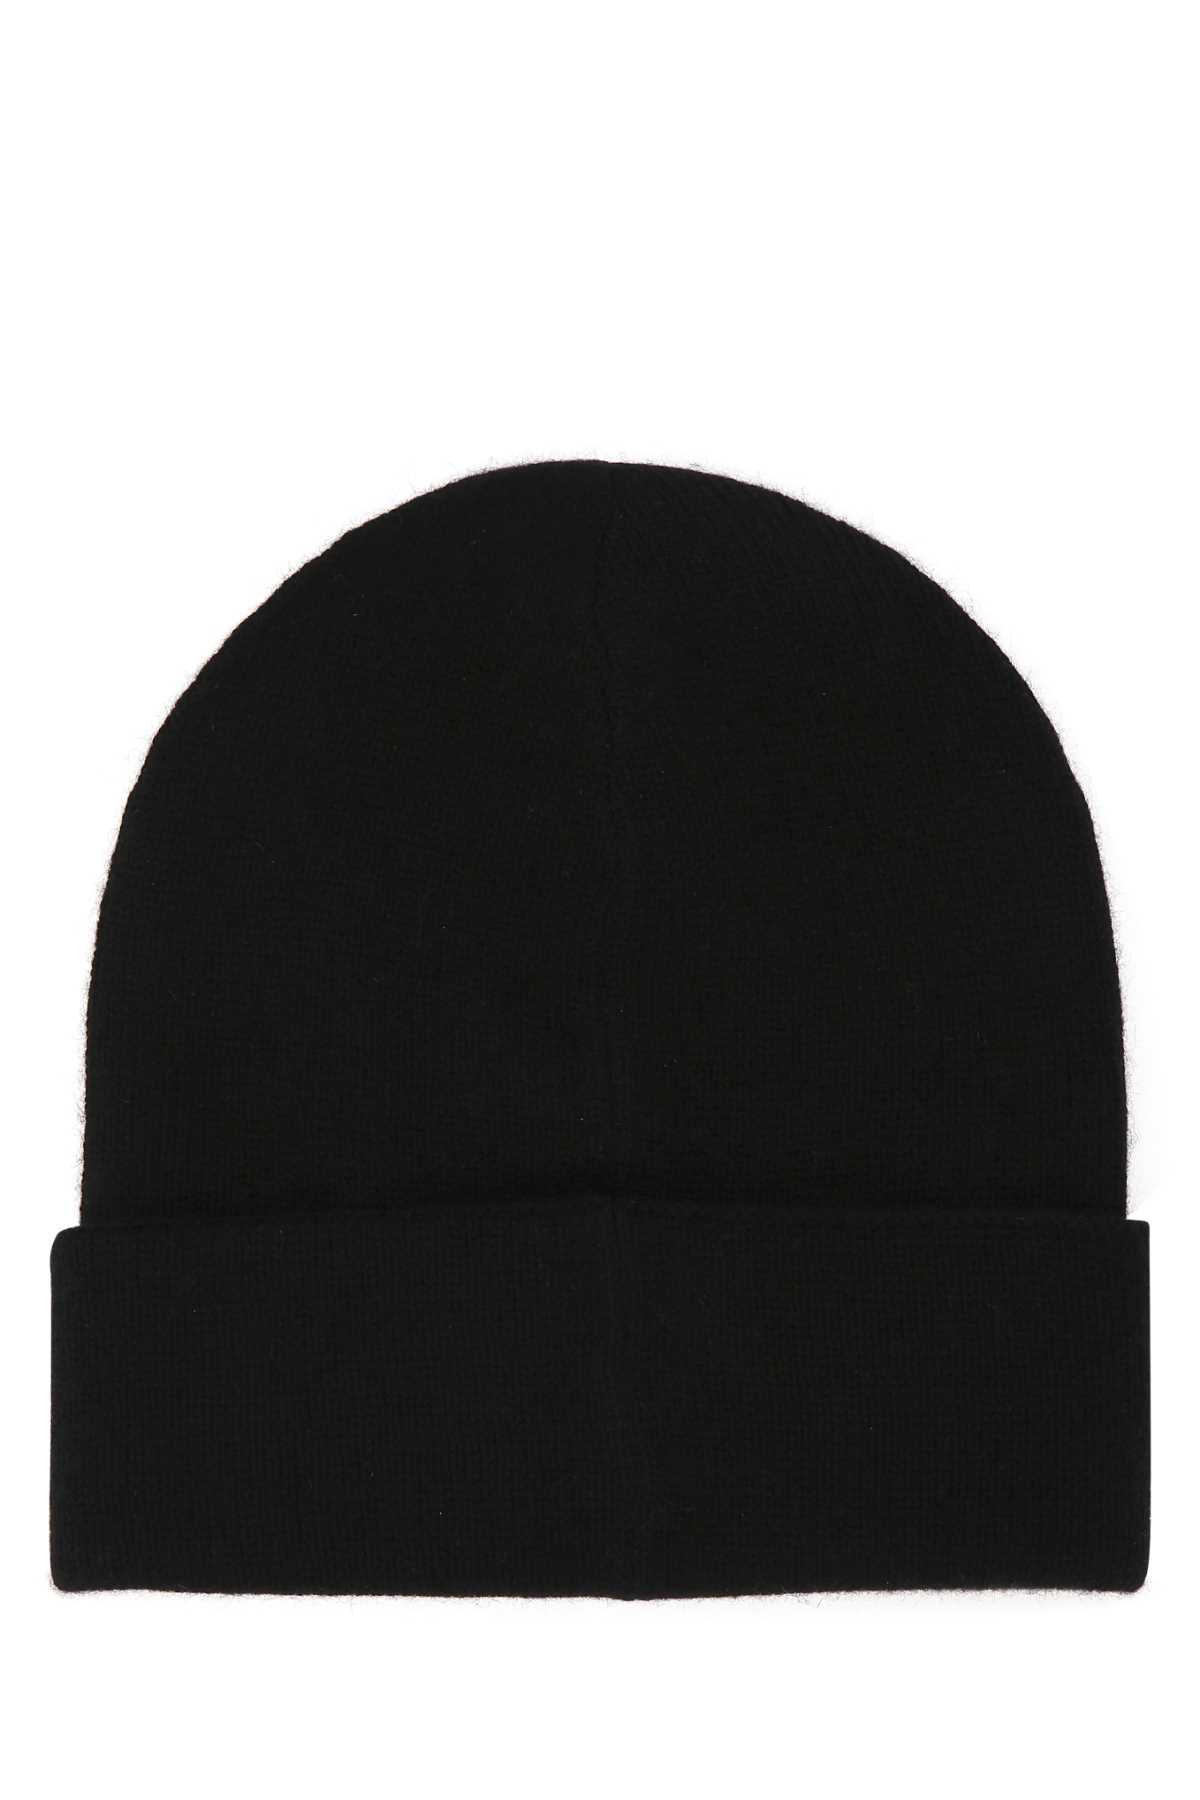 Alexander Mcqueen Black Cashmere Beanie Hat In 1079